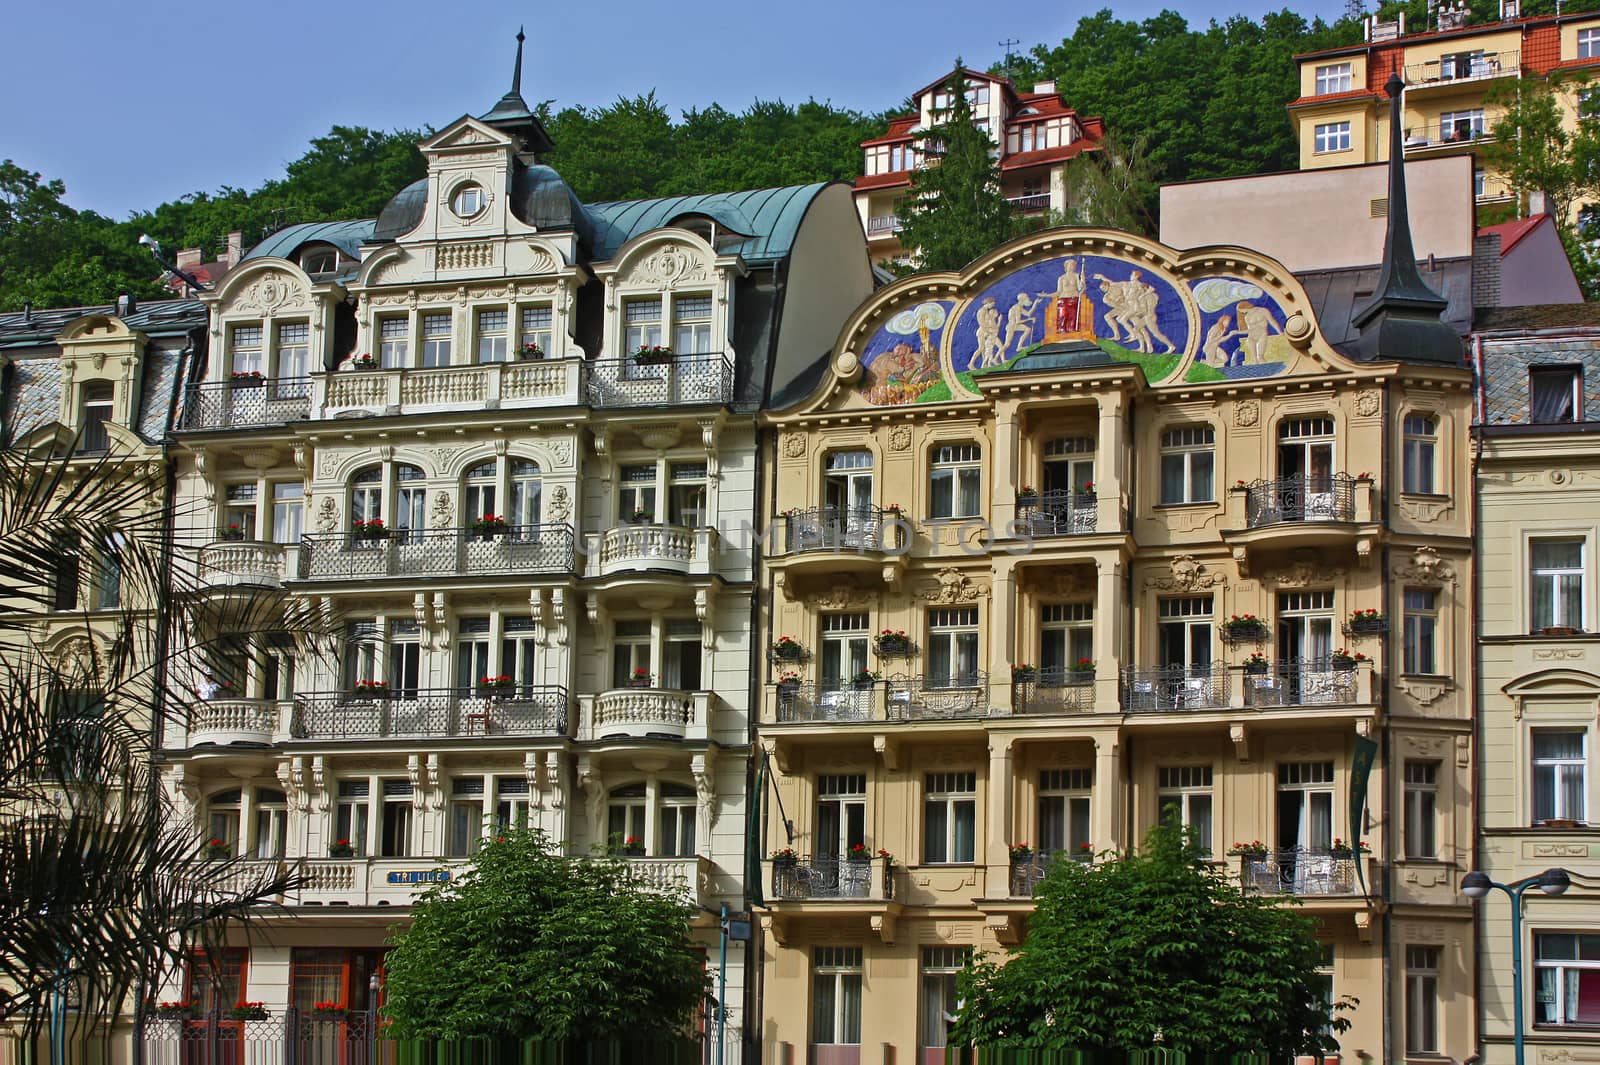 city centre of Karlovy Vary,Czech Republic by borisb17